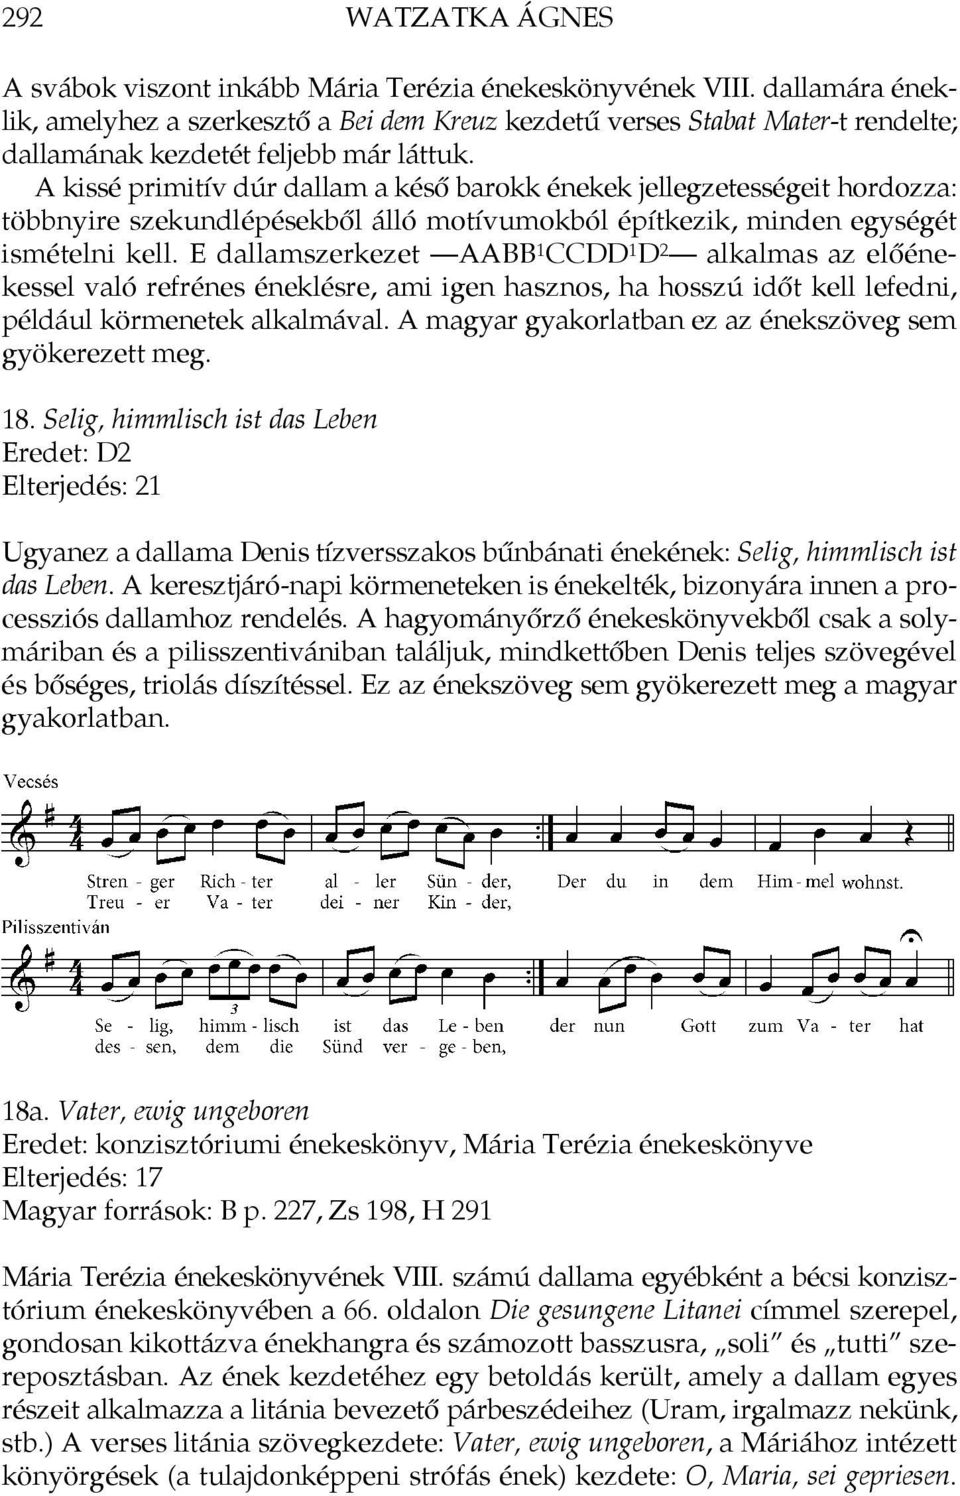 A kissé primitív dúr dallam a késő barokk énekek jellegzetességeit hordozza: többnyire szekundlépésekből álló motívumokból építkezik, minden egységét ismételni kell.